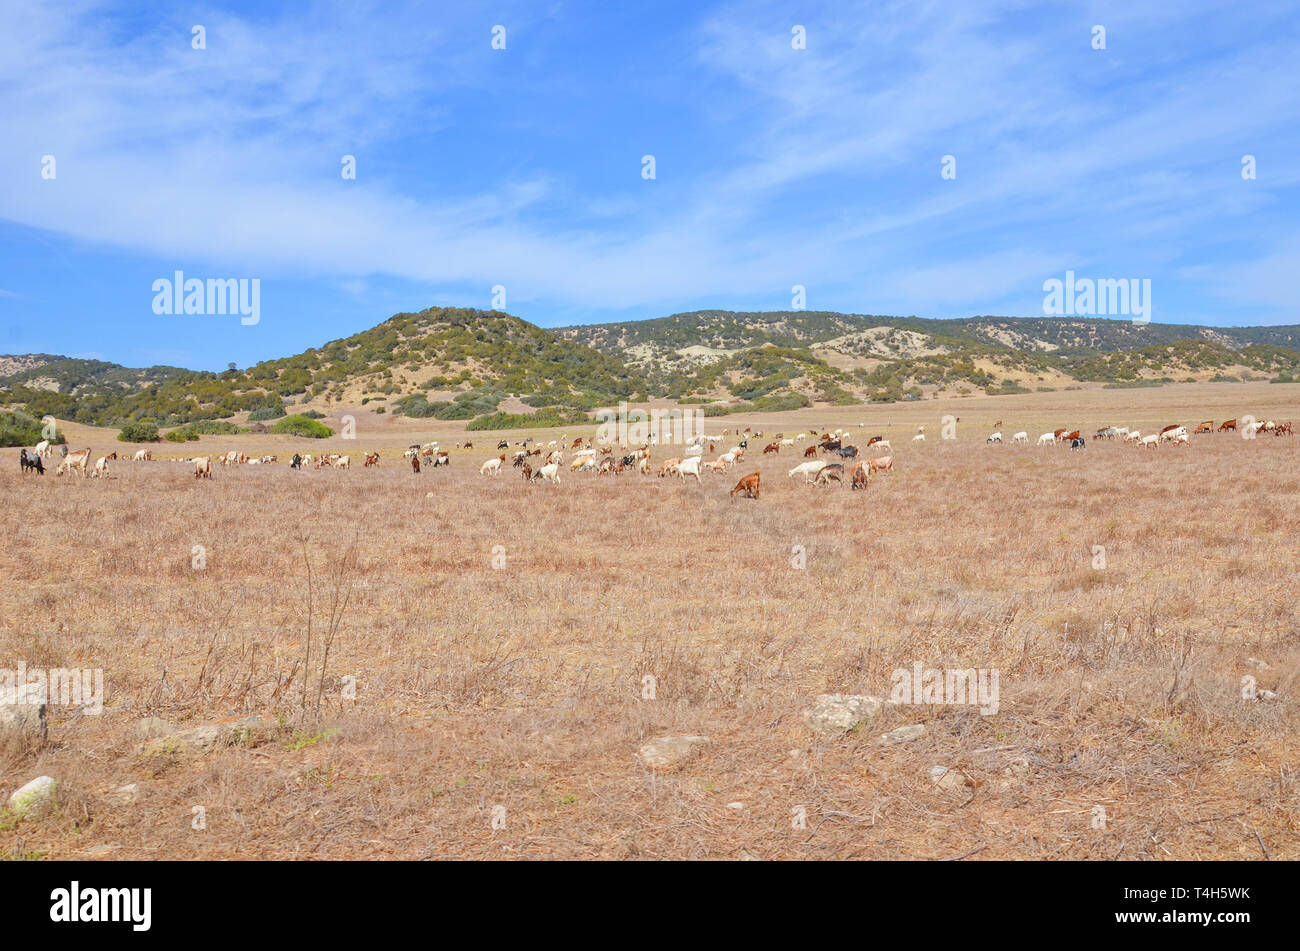 Beau paysage chypriote à sec avec troupeau de chèvres. Les petites collines avec des arbres subtropicaux en arrière-plan. Pris dans une superbe péninsule de Karpas. Banque D'Images